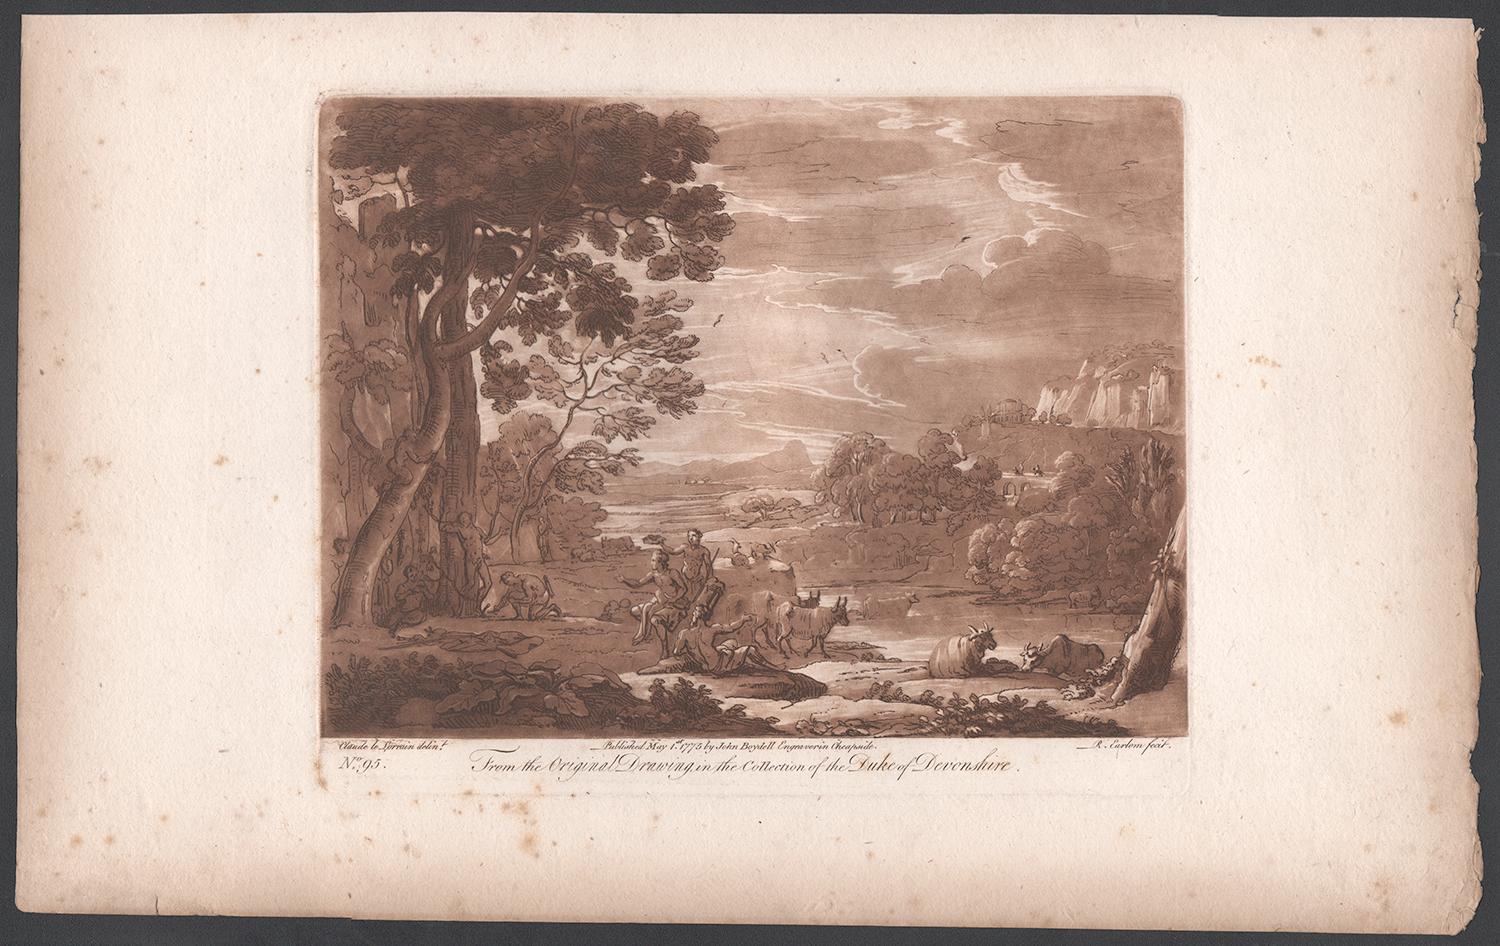 Paysage italien, mezzo-tinte de Richard Earlom d'après Claude le Lorrain - Print de (after) Claude Lorrain (Claude Gellée)